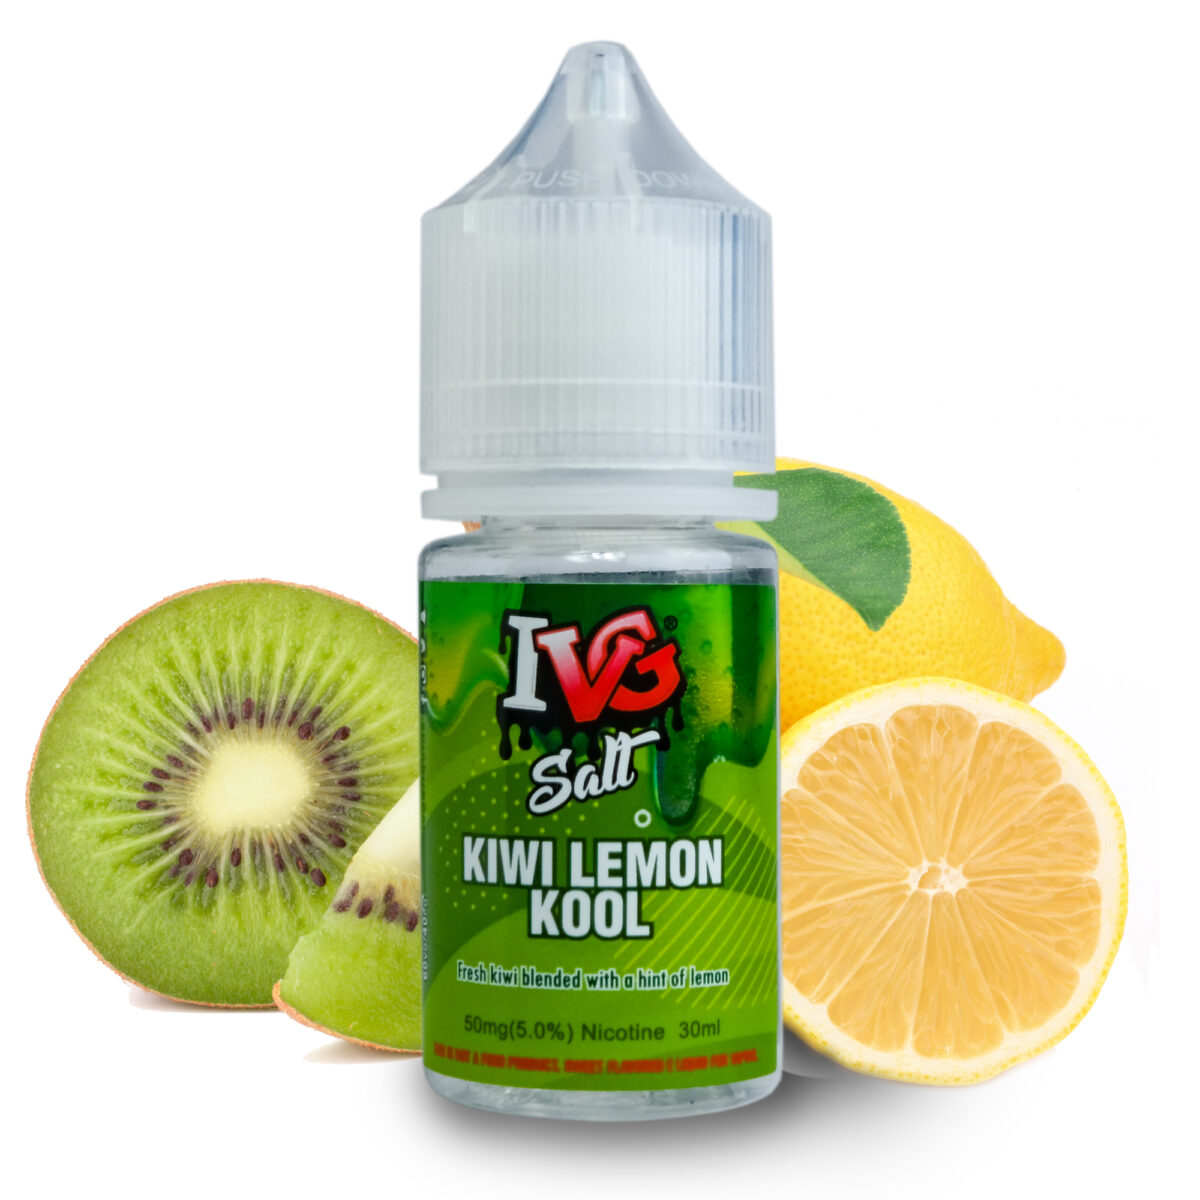 IVG Salt Kiwi Lemon Kool 30ml 50 MG 2